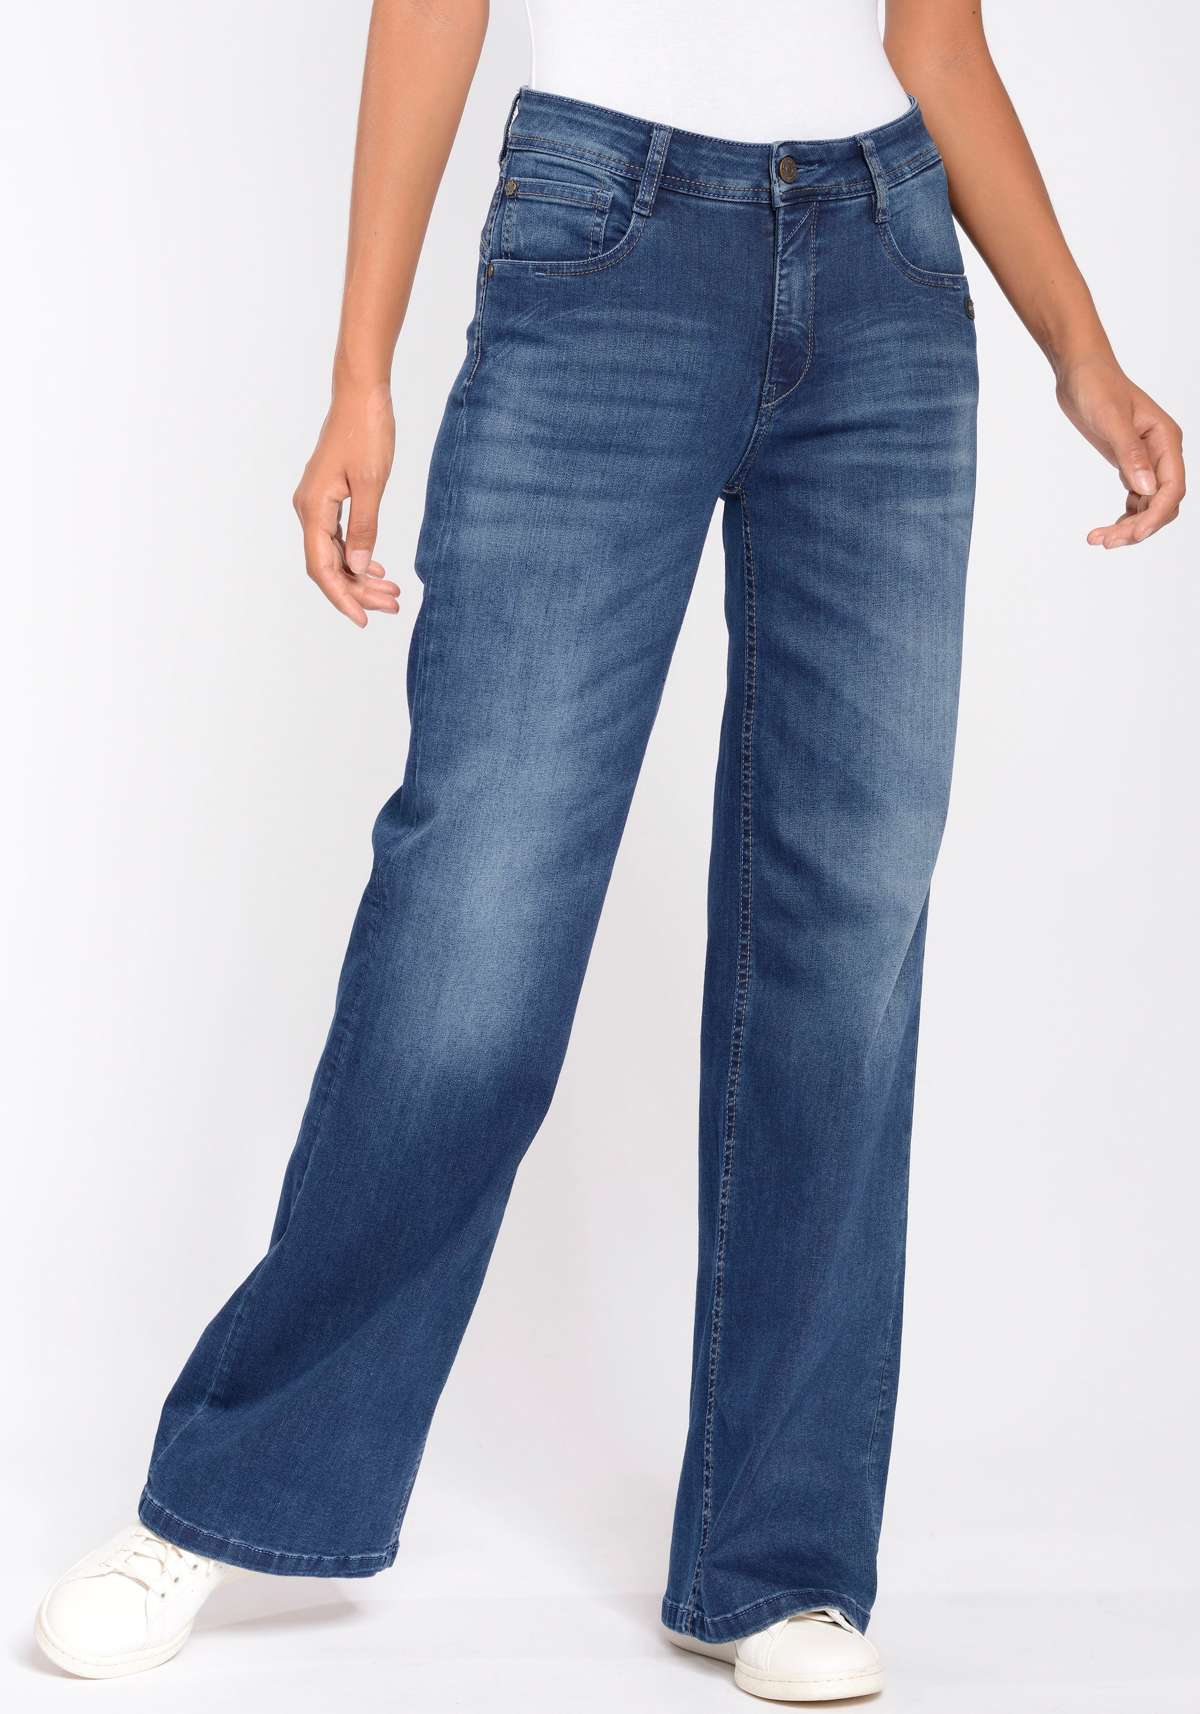 Широкие джинсы с эластаном для идеальной посадки.